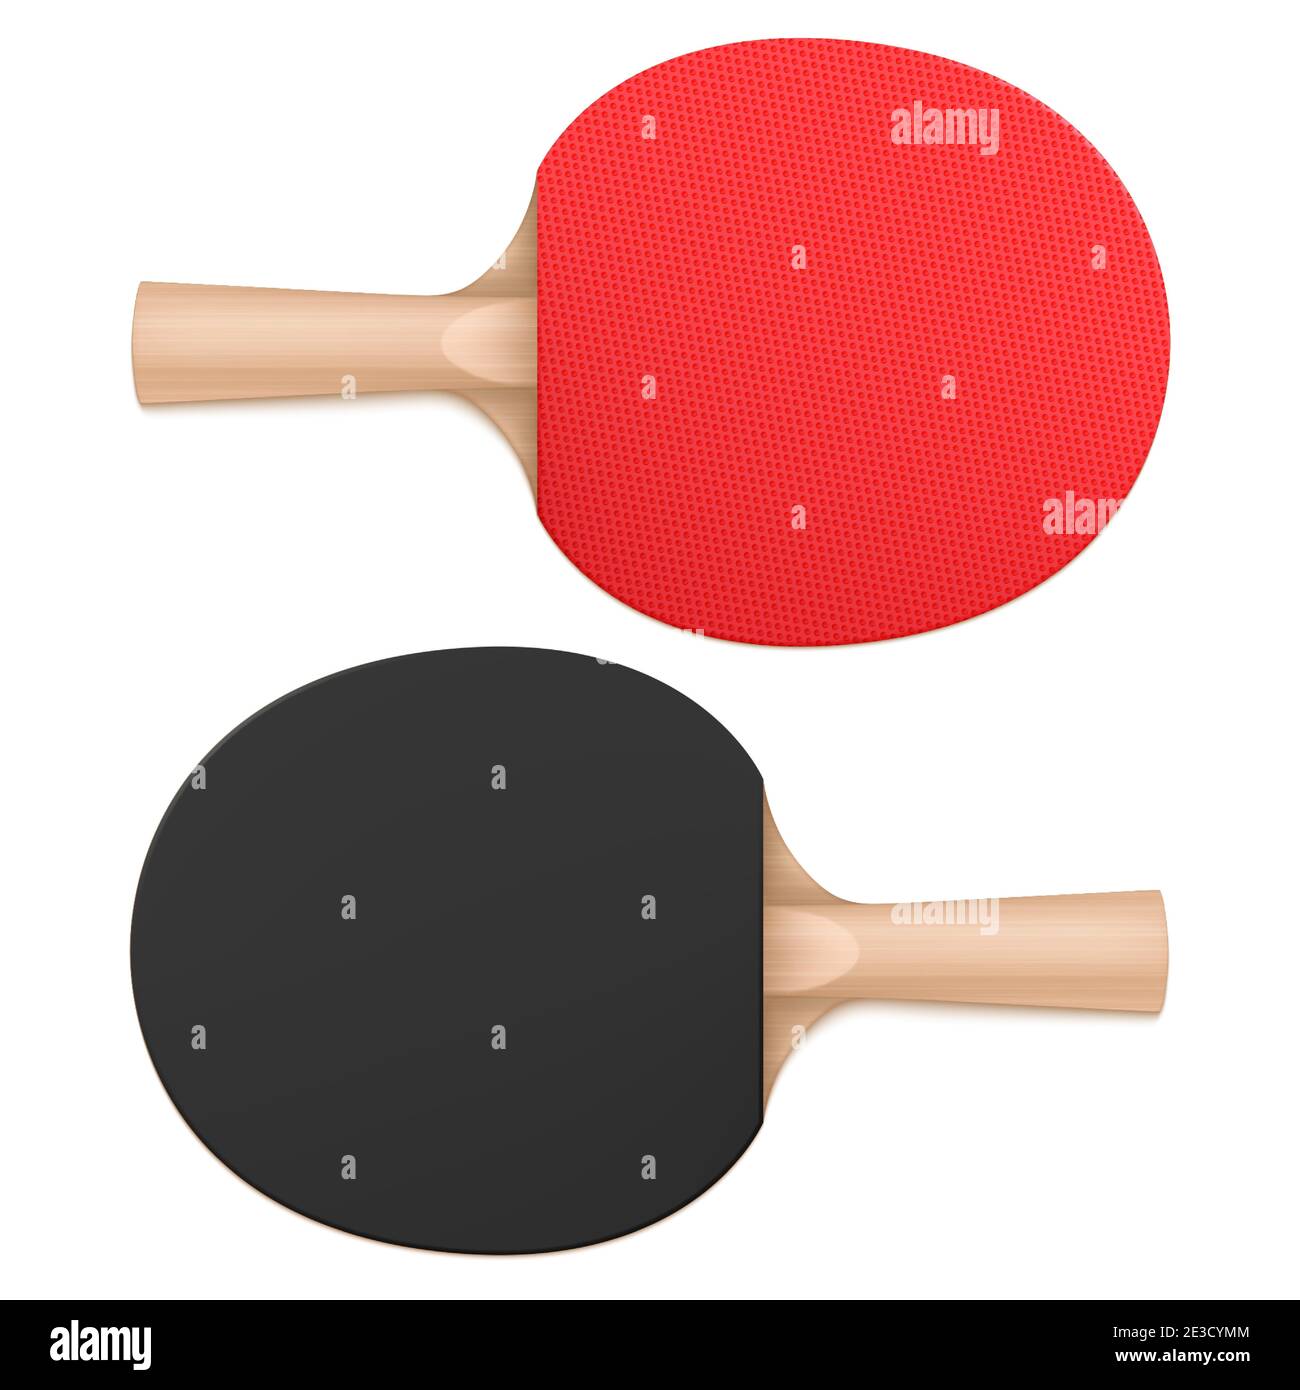 Pagaie da ping-pong, racchette da ping-pong vista dall'alto e dal basso. Attrezzatura sportiva con manico in legno e superficie in gomma rossa e nera isolata su sfondo bianco, rappresentazione vettoriale 3d realistica Illustrazione Vettoriale